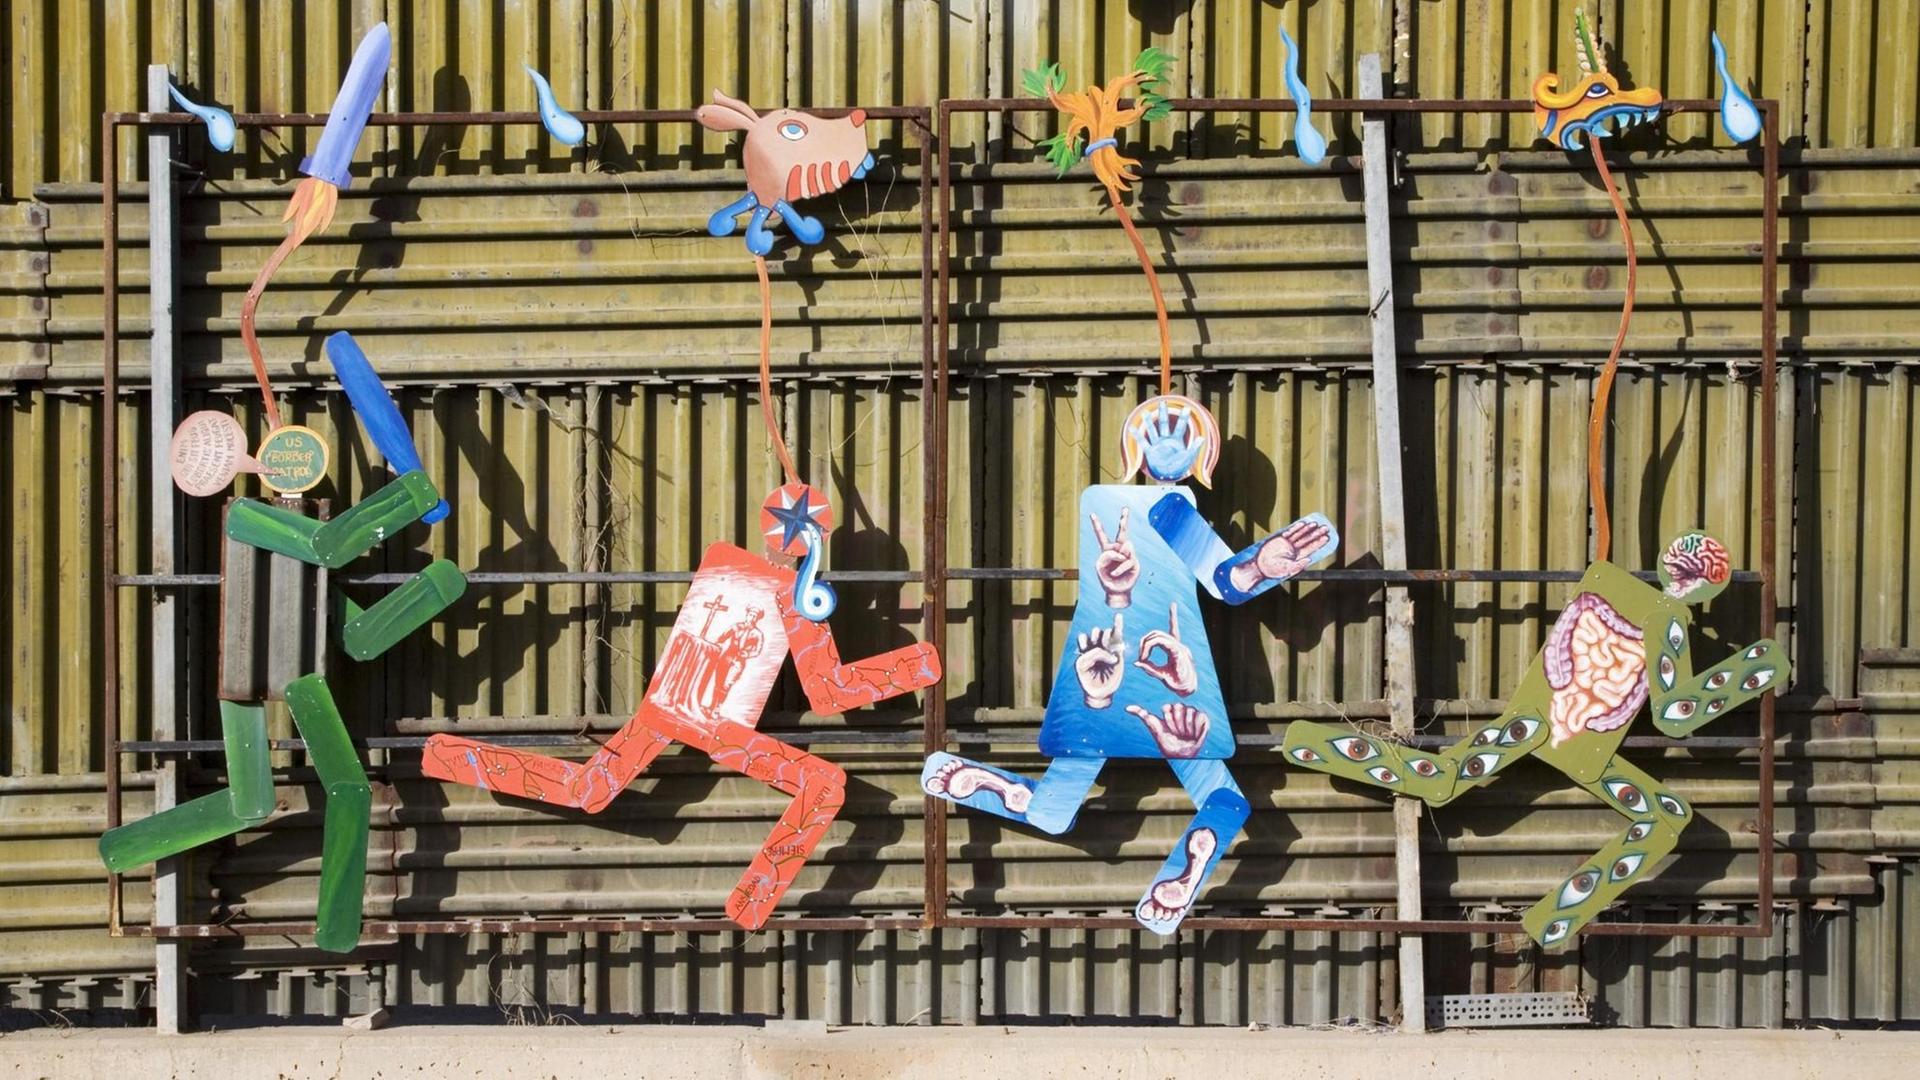 Kunstwerk auf der mexikanischen Seite des Grenzzauns, der die USA von Mexiko trennt, zeigt einen US-Grenzschutzpolizisten, der mit Schlagstock mehrere flüchtende Personen verfolgt, aufgenommen in Nogales, Sonora, Mexiko